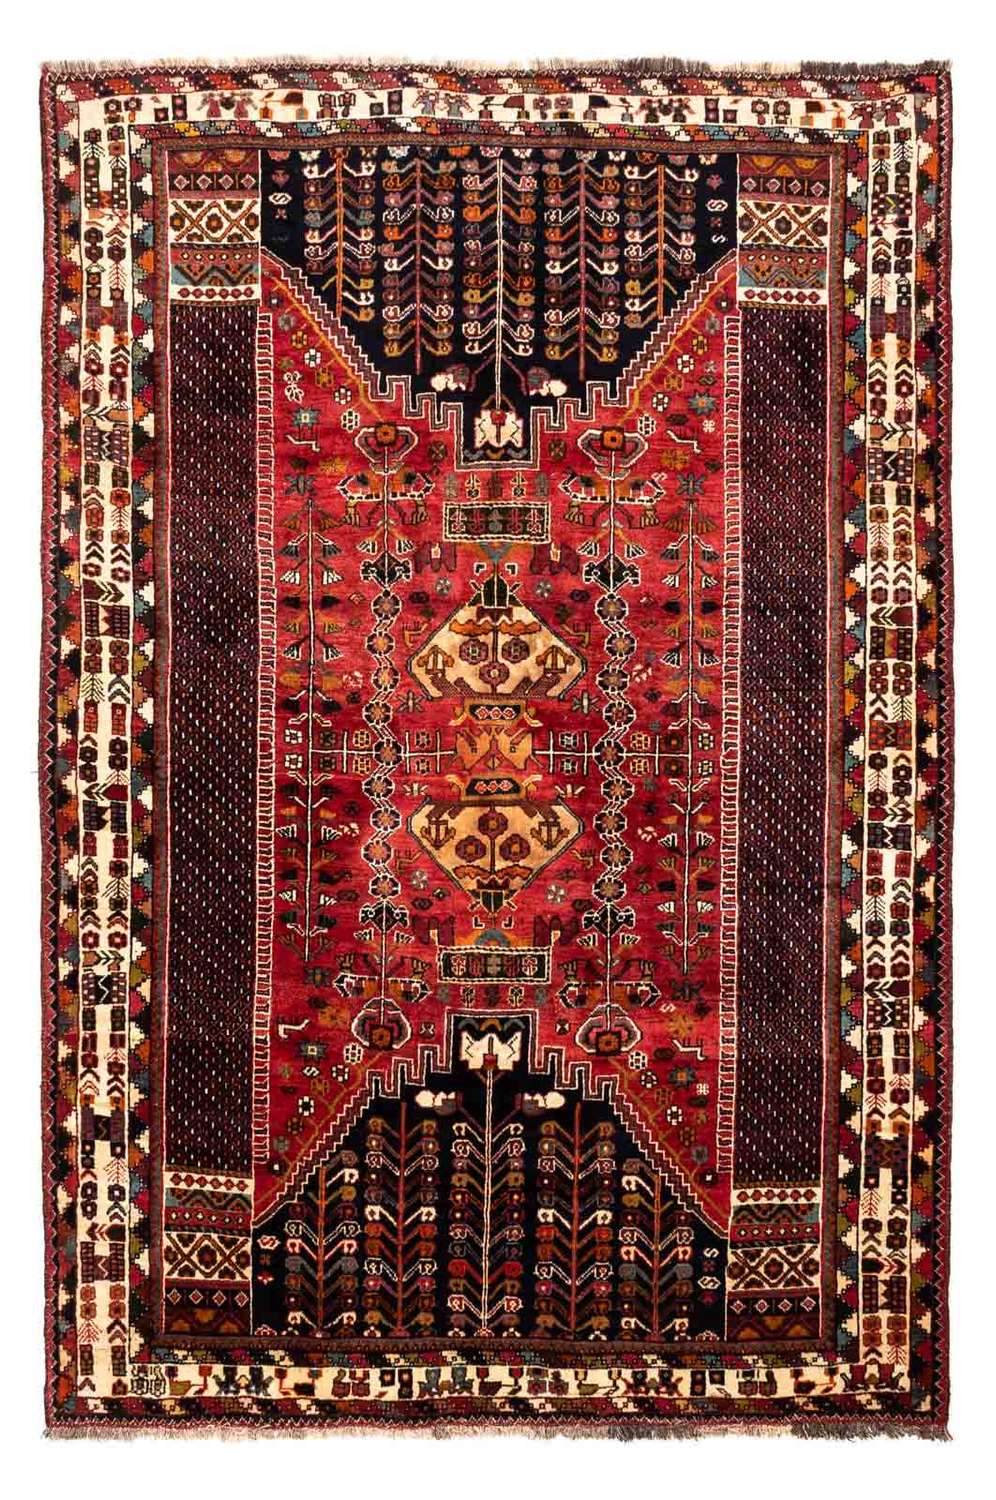 Tapis persan - Nomadic - 255 x 175 cm - rouge foncé